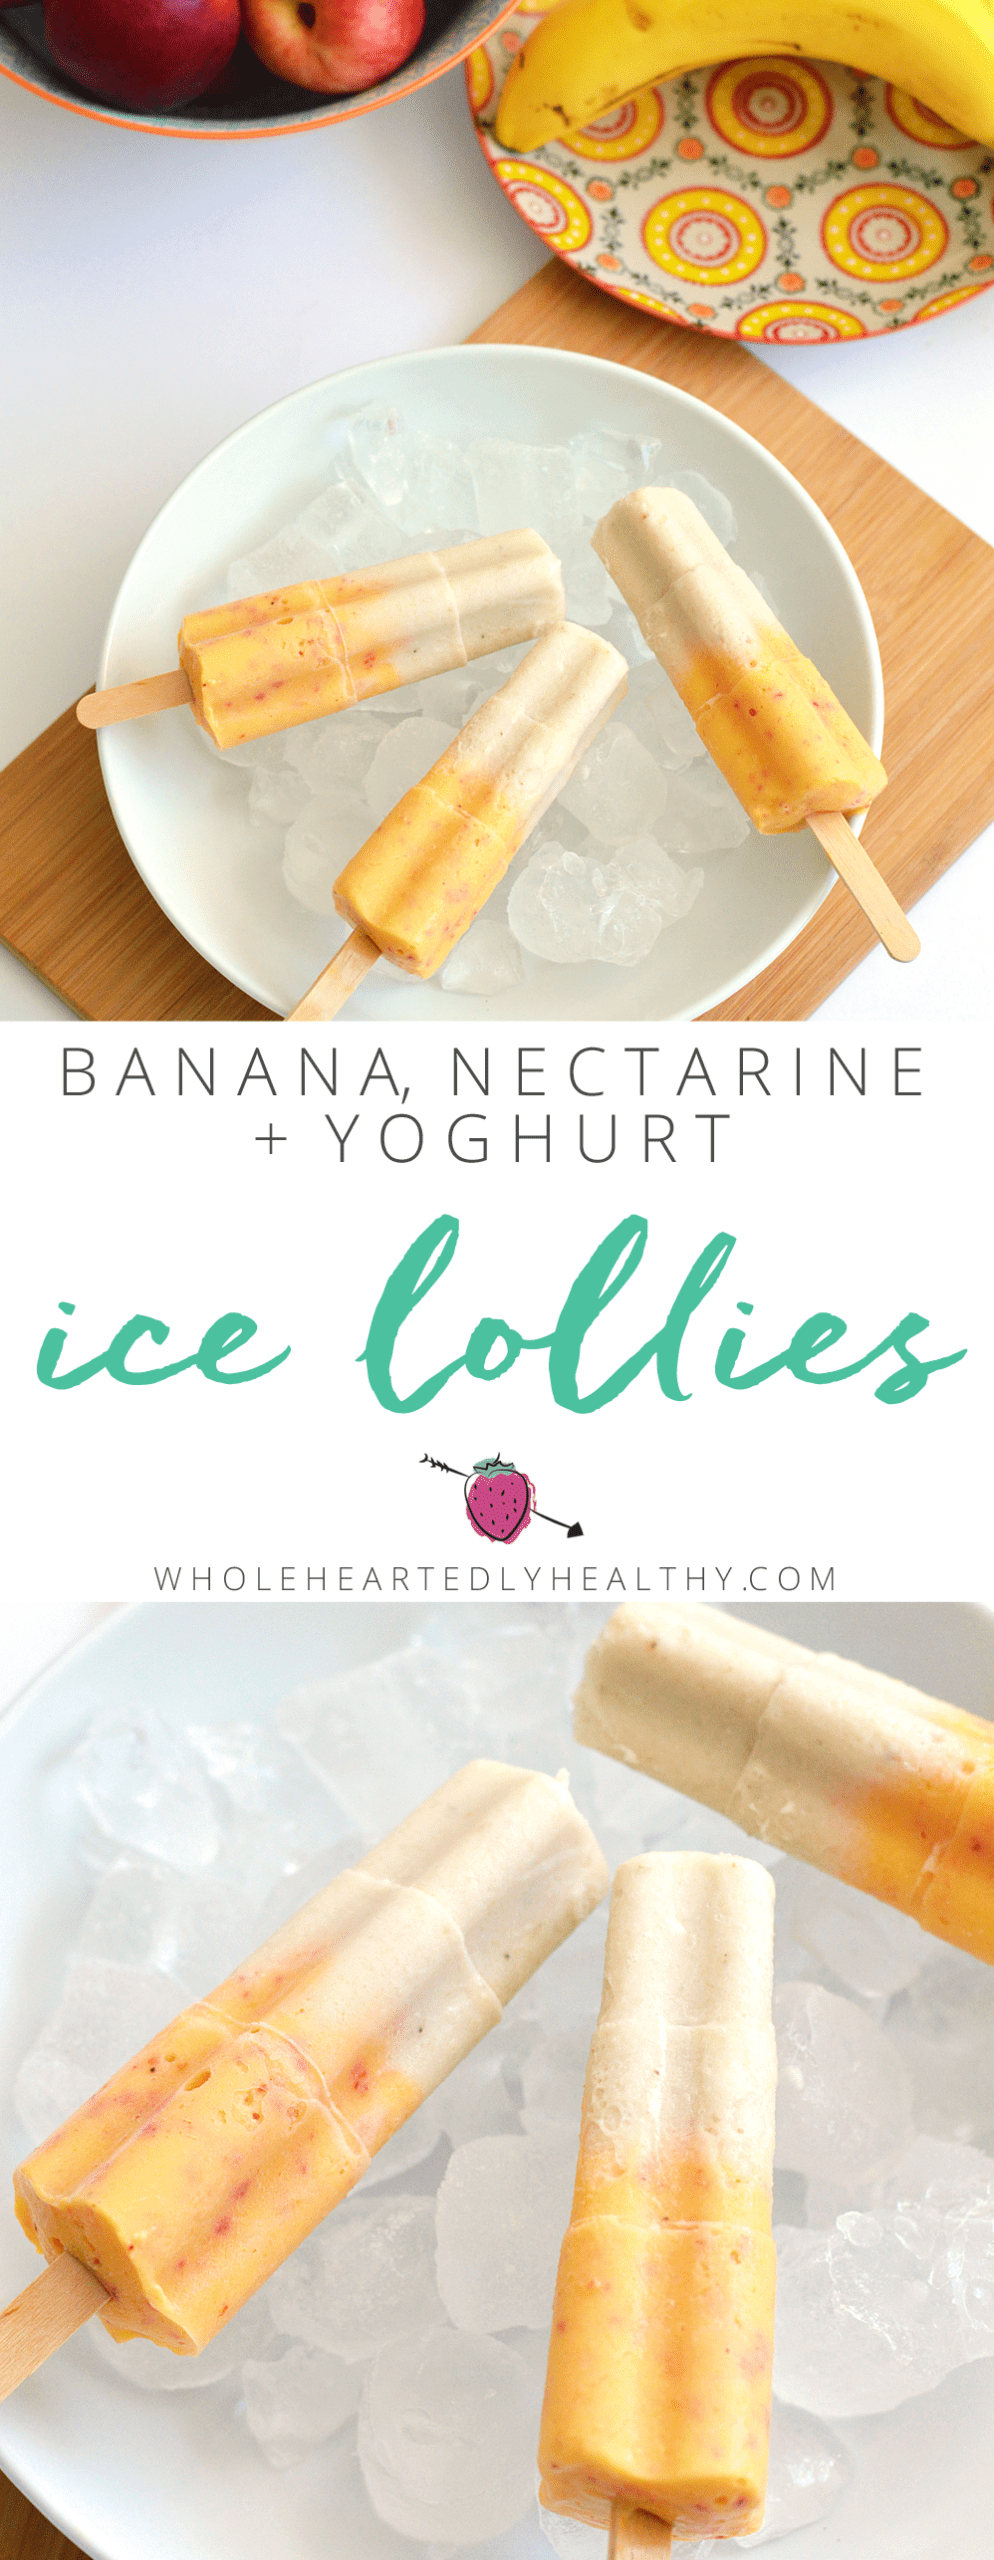 Banana nectarine and yoghurt ice lollies